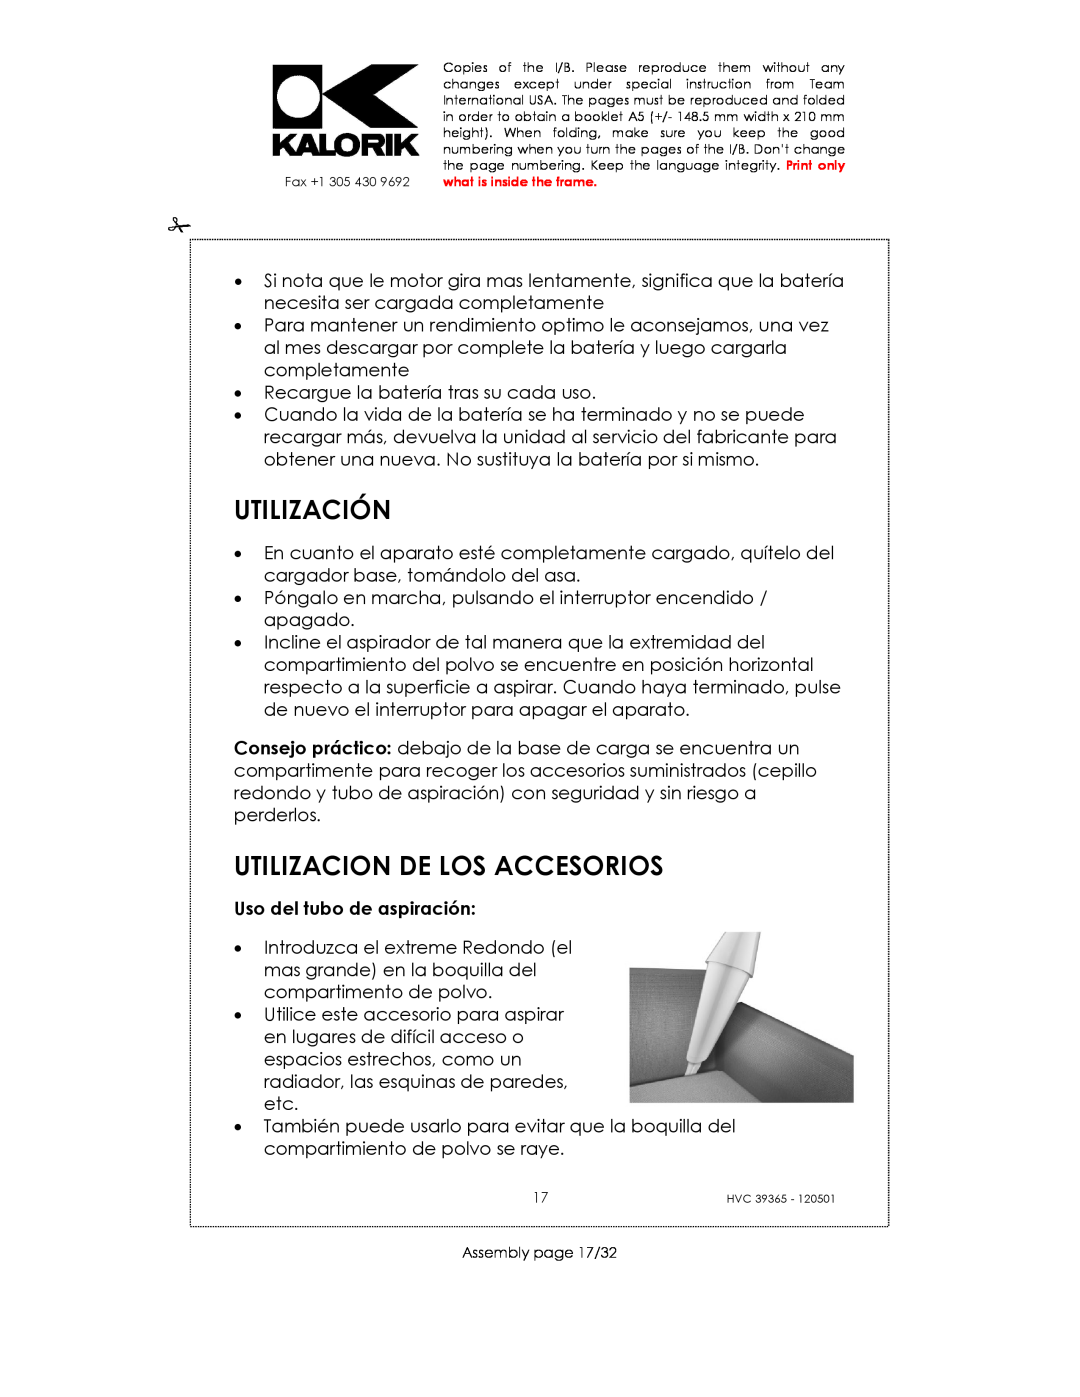 Kalorik HVC 39365 manual Utilización, Utilizacion De Los Accesorios, Uso del tubo de aspiración 